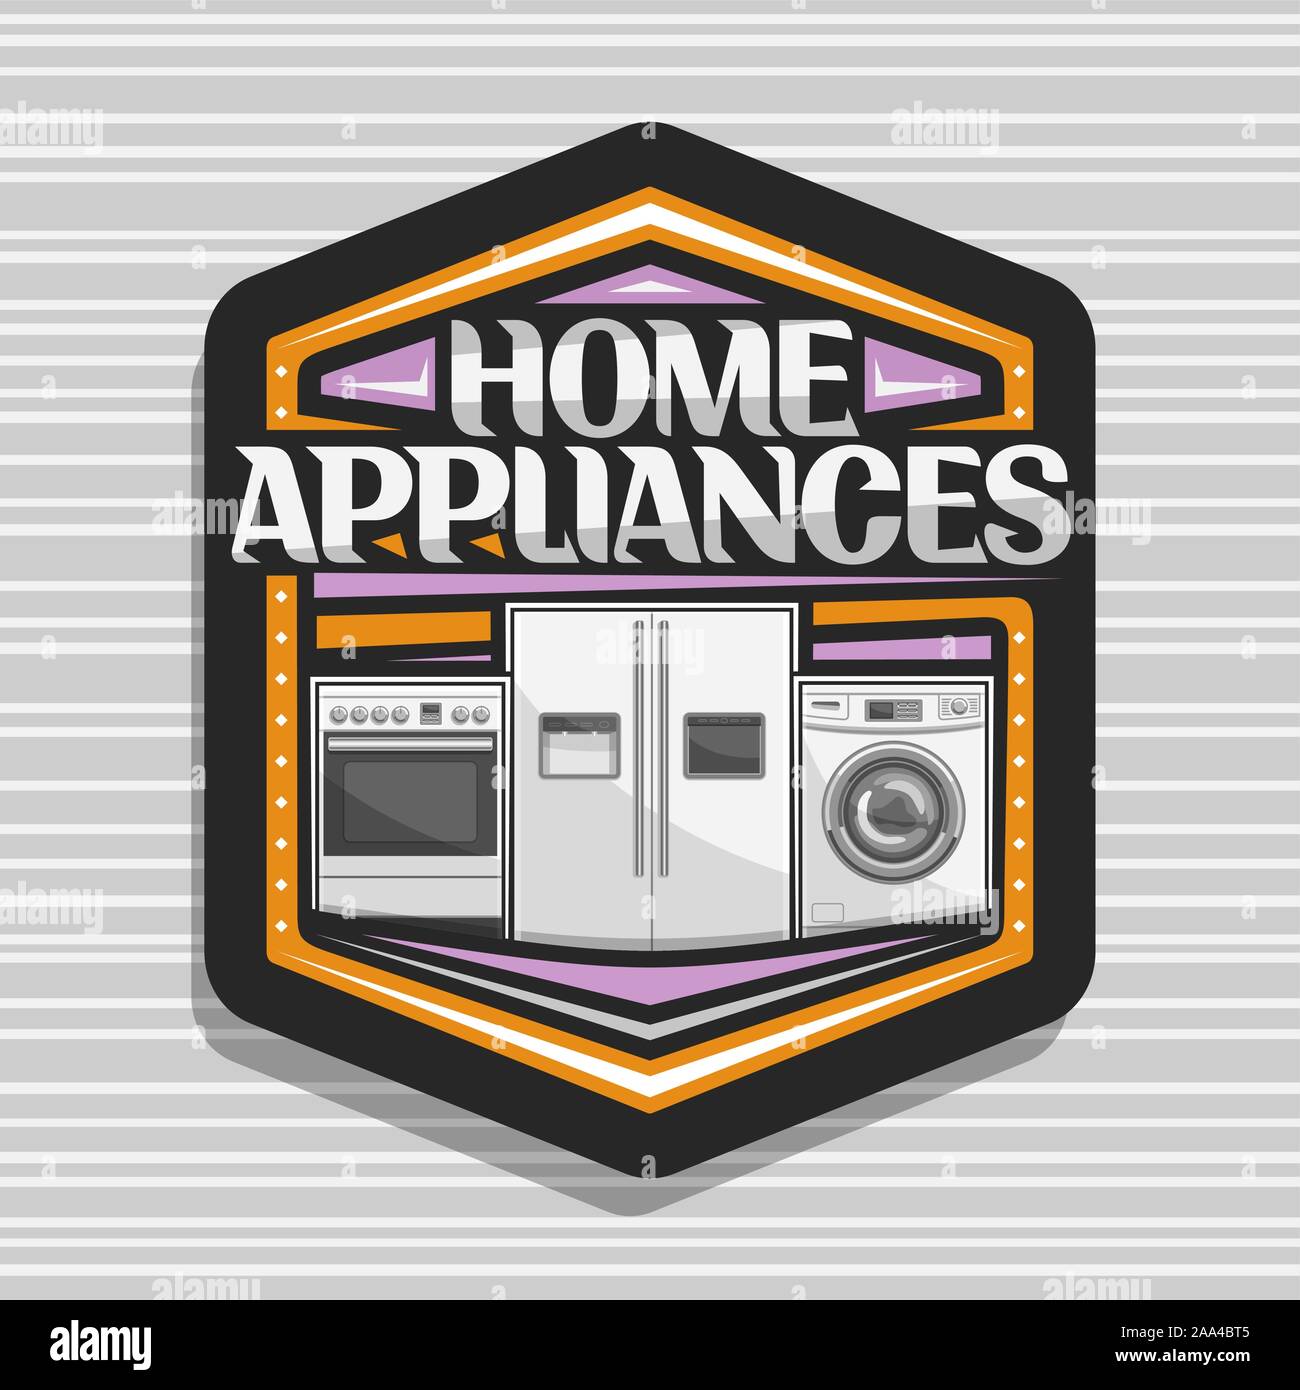 Vektor logo für Haushaltsgeräte, sechseckige Zeichen mit Abbildung: E-Herd, großen Kühlschrank mit Bildschirm, chrom Waschmaschine, original Lette Stock Vektor